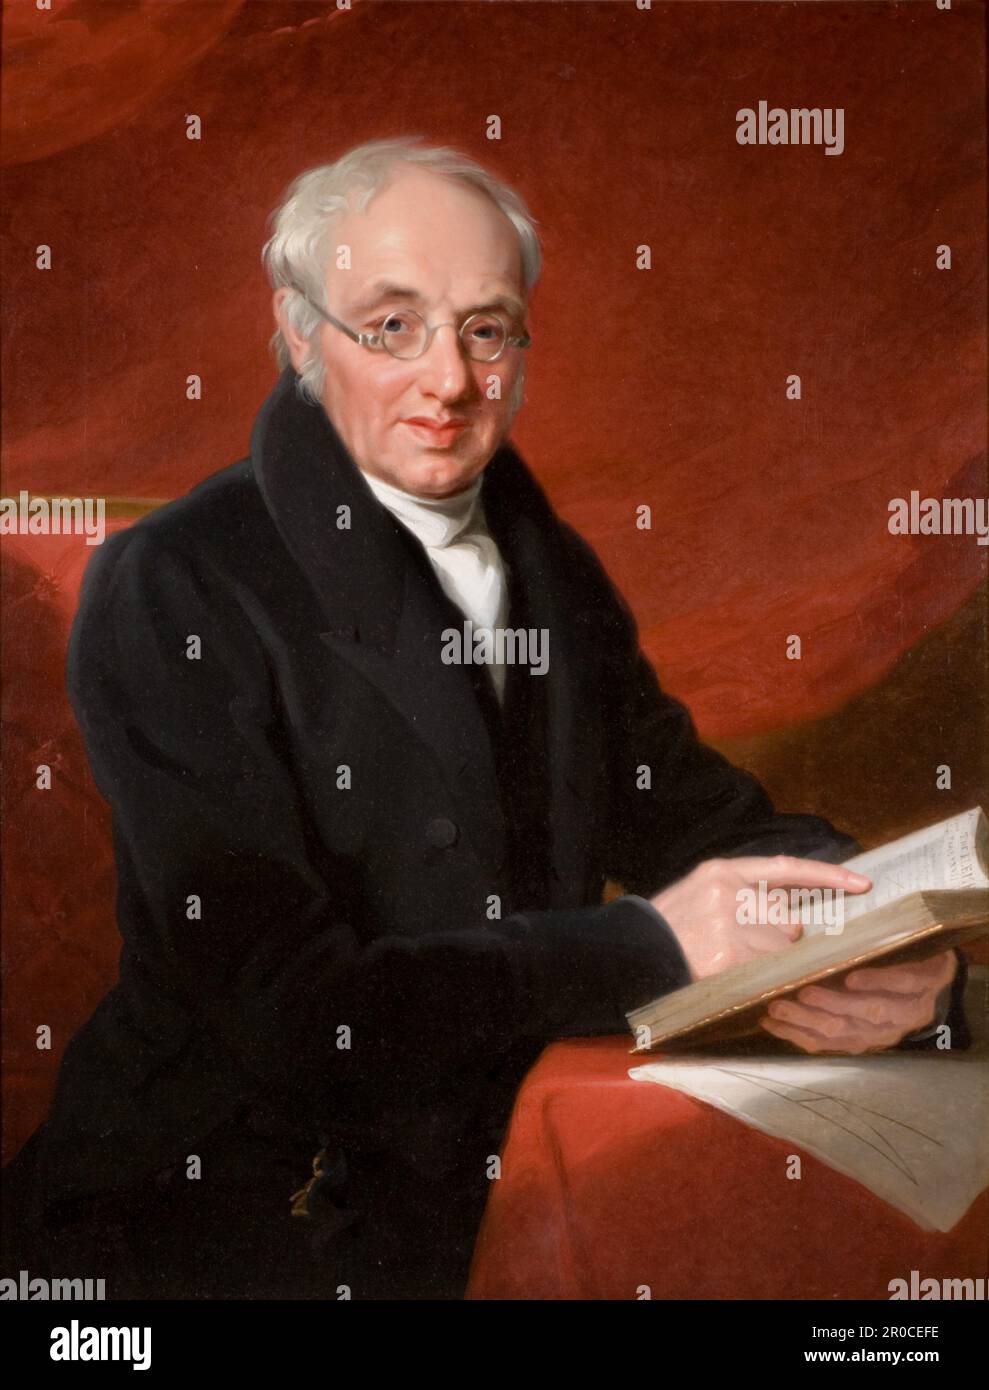 Porträt von Thomas Wright Hill, 1831. Von Mary Martha Pearson. Thomas Wright Hill (geboren 1763 in Kidderminster -1851) war Mathematiker und Schulmeister. Ihm wird zugeschrieben, dass er 1819 die einzige übertragbare Stimme erfunden hat. Sein Sohn, Rowland Hill, war der Urheber des modernen Postsystems. Stockfoto